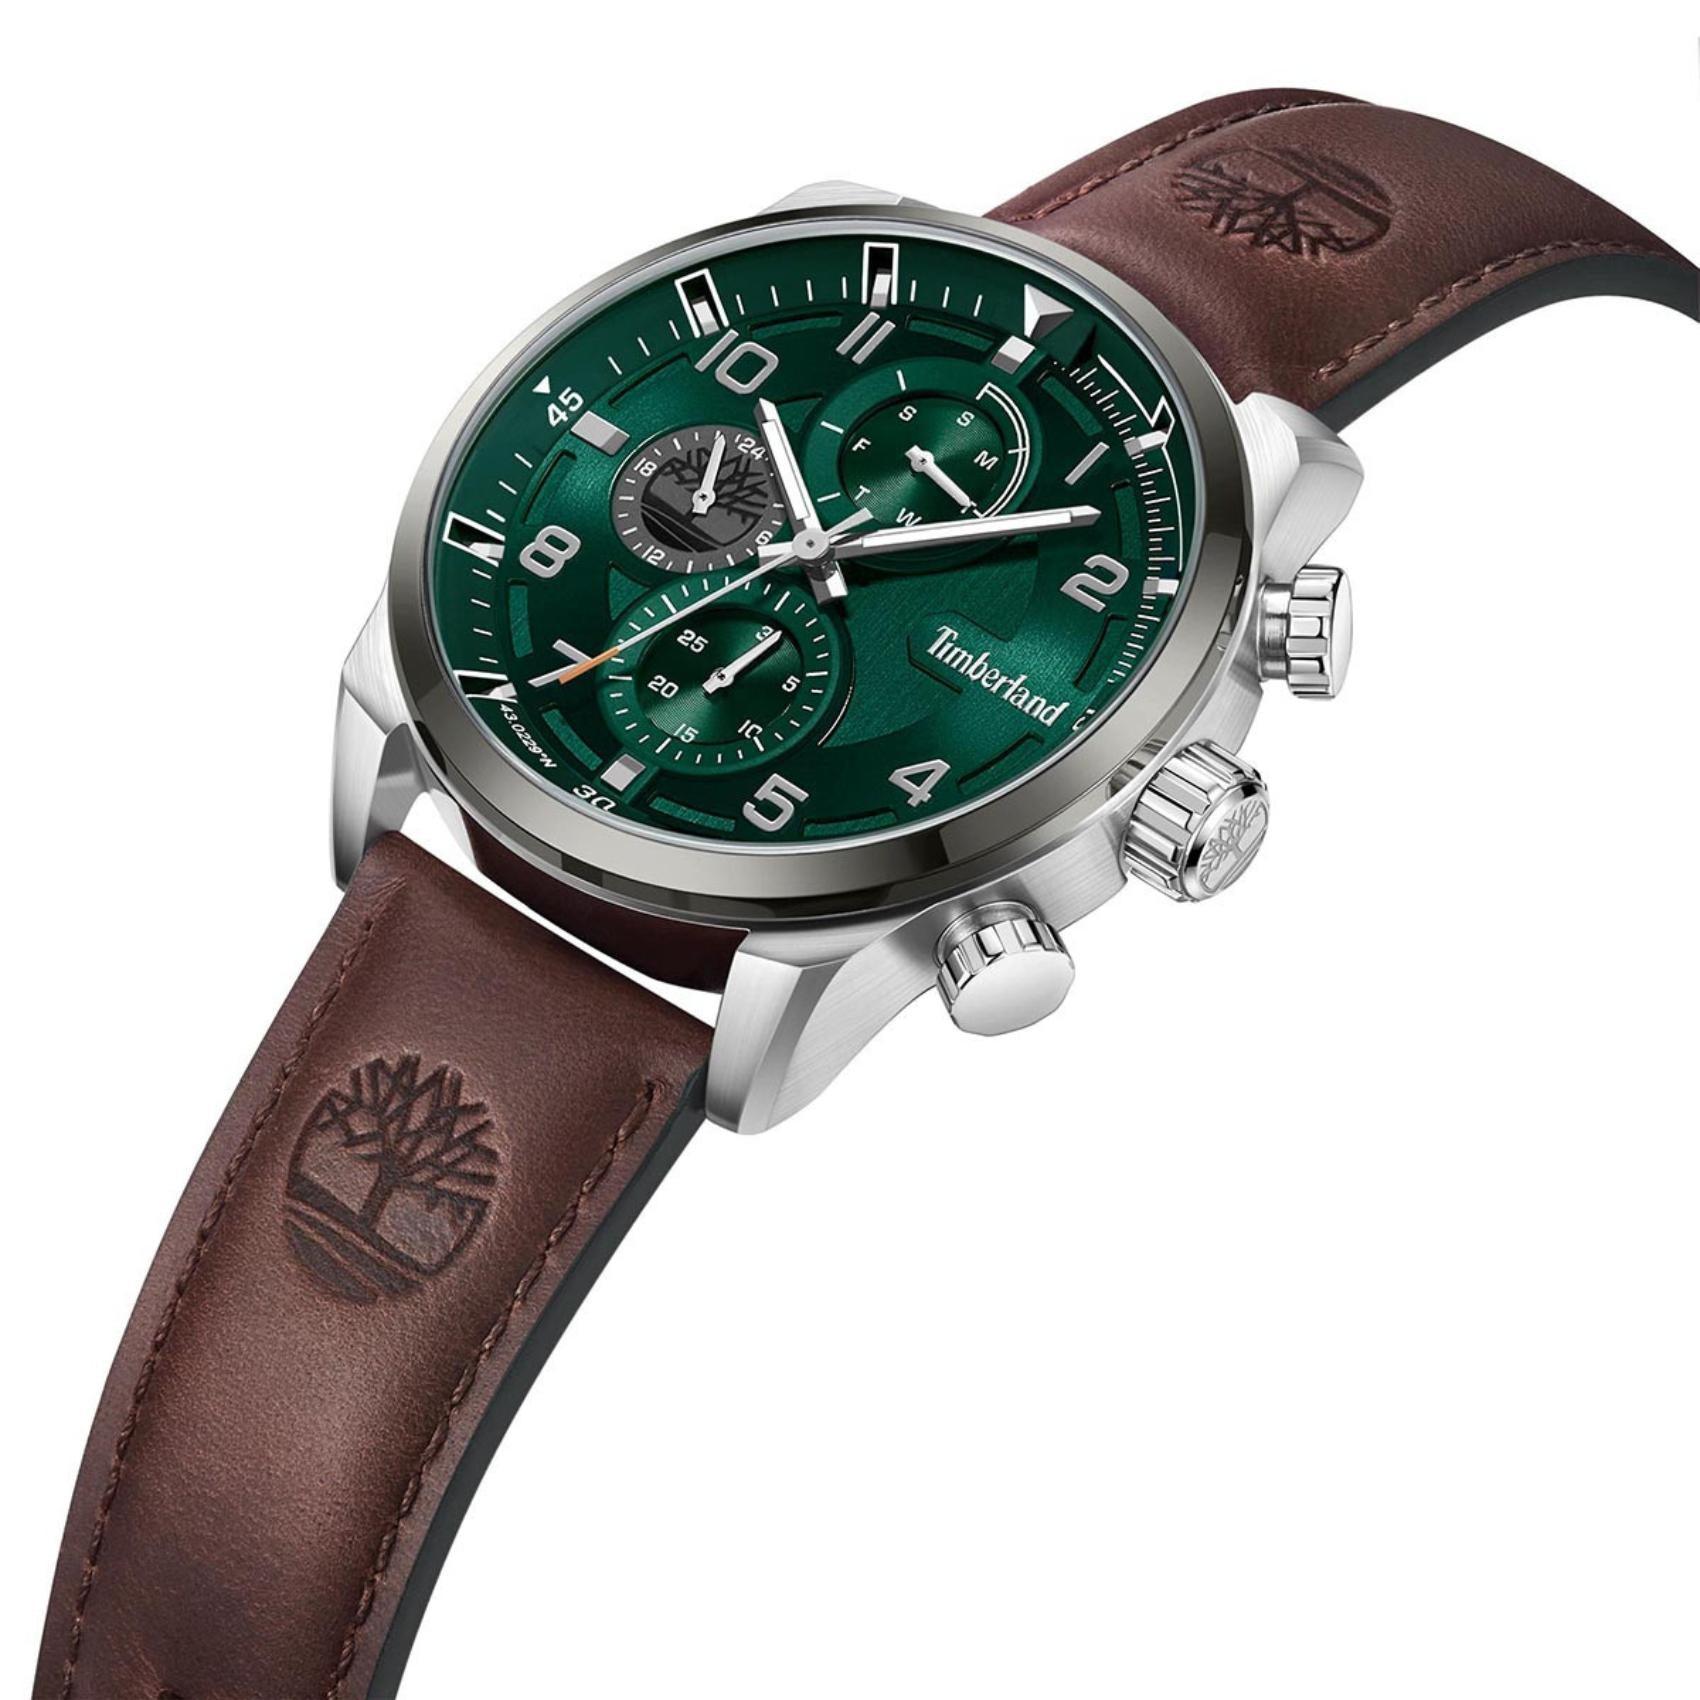 Ρολόι Timberland Henniker TDWGF2201101 με καφέ δερμάτινο λουρί, πράσινο καντράν και κάσα διαμέτρου 46mm με ένδειξη ημέρας και χρονογράφους.